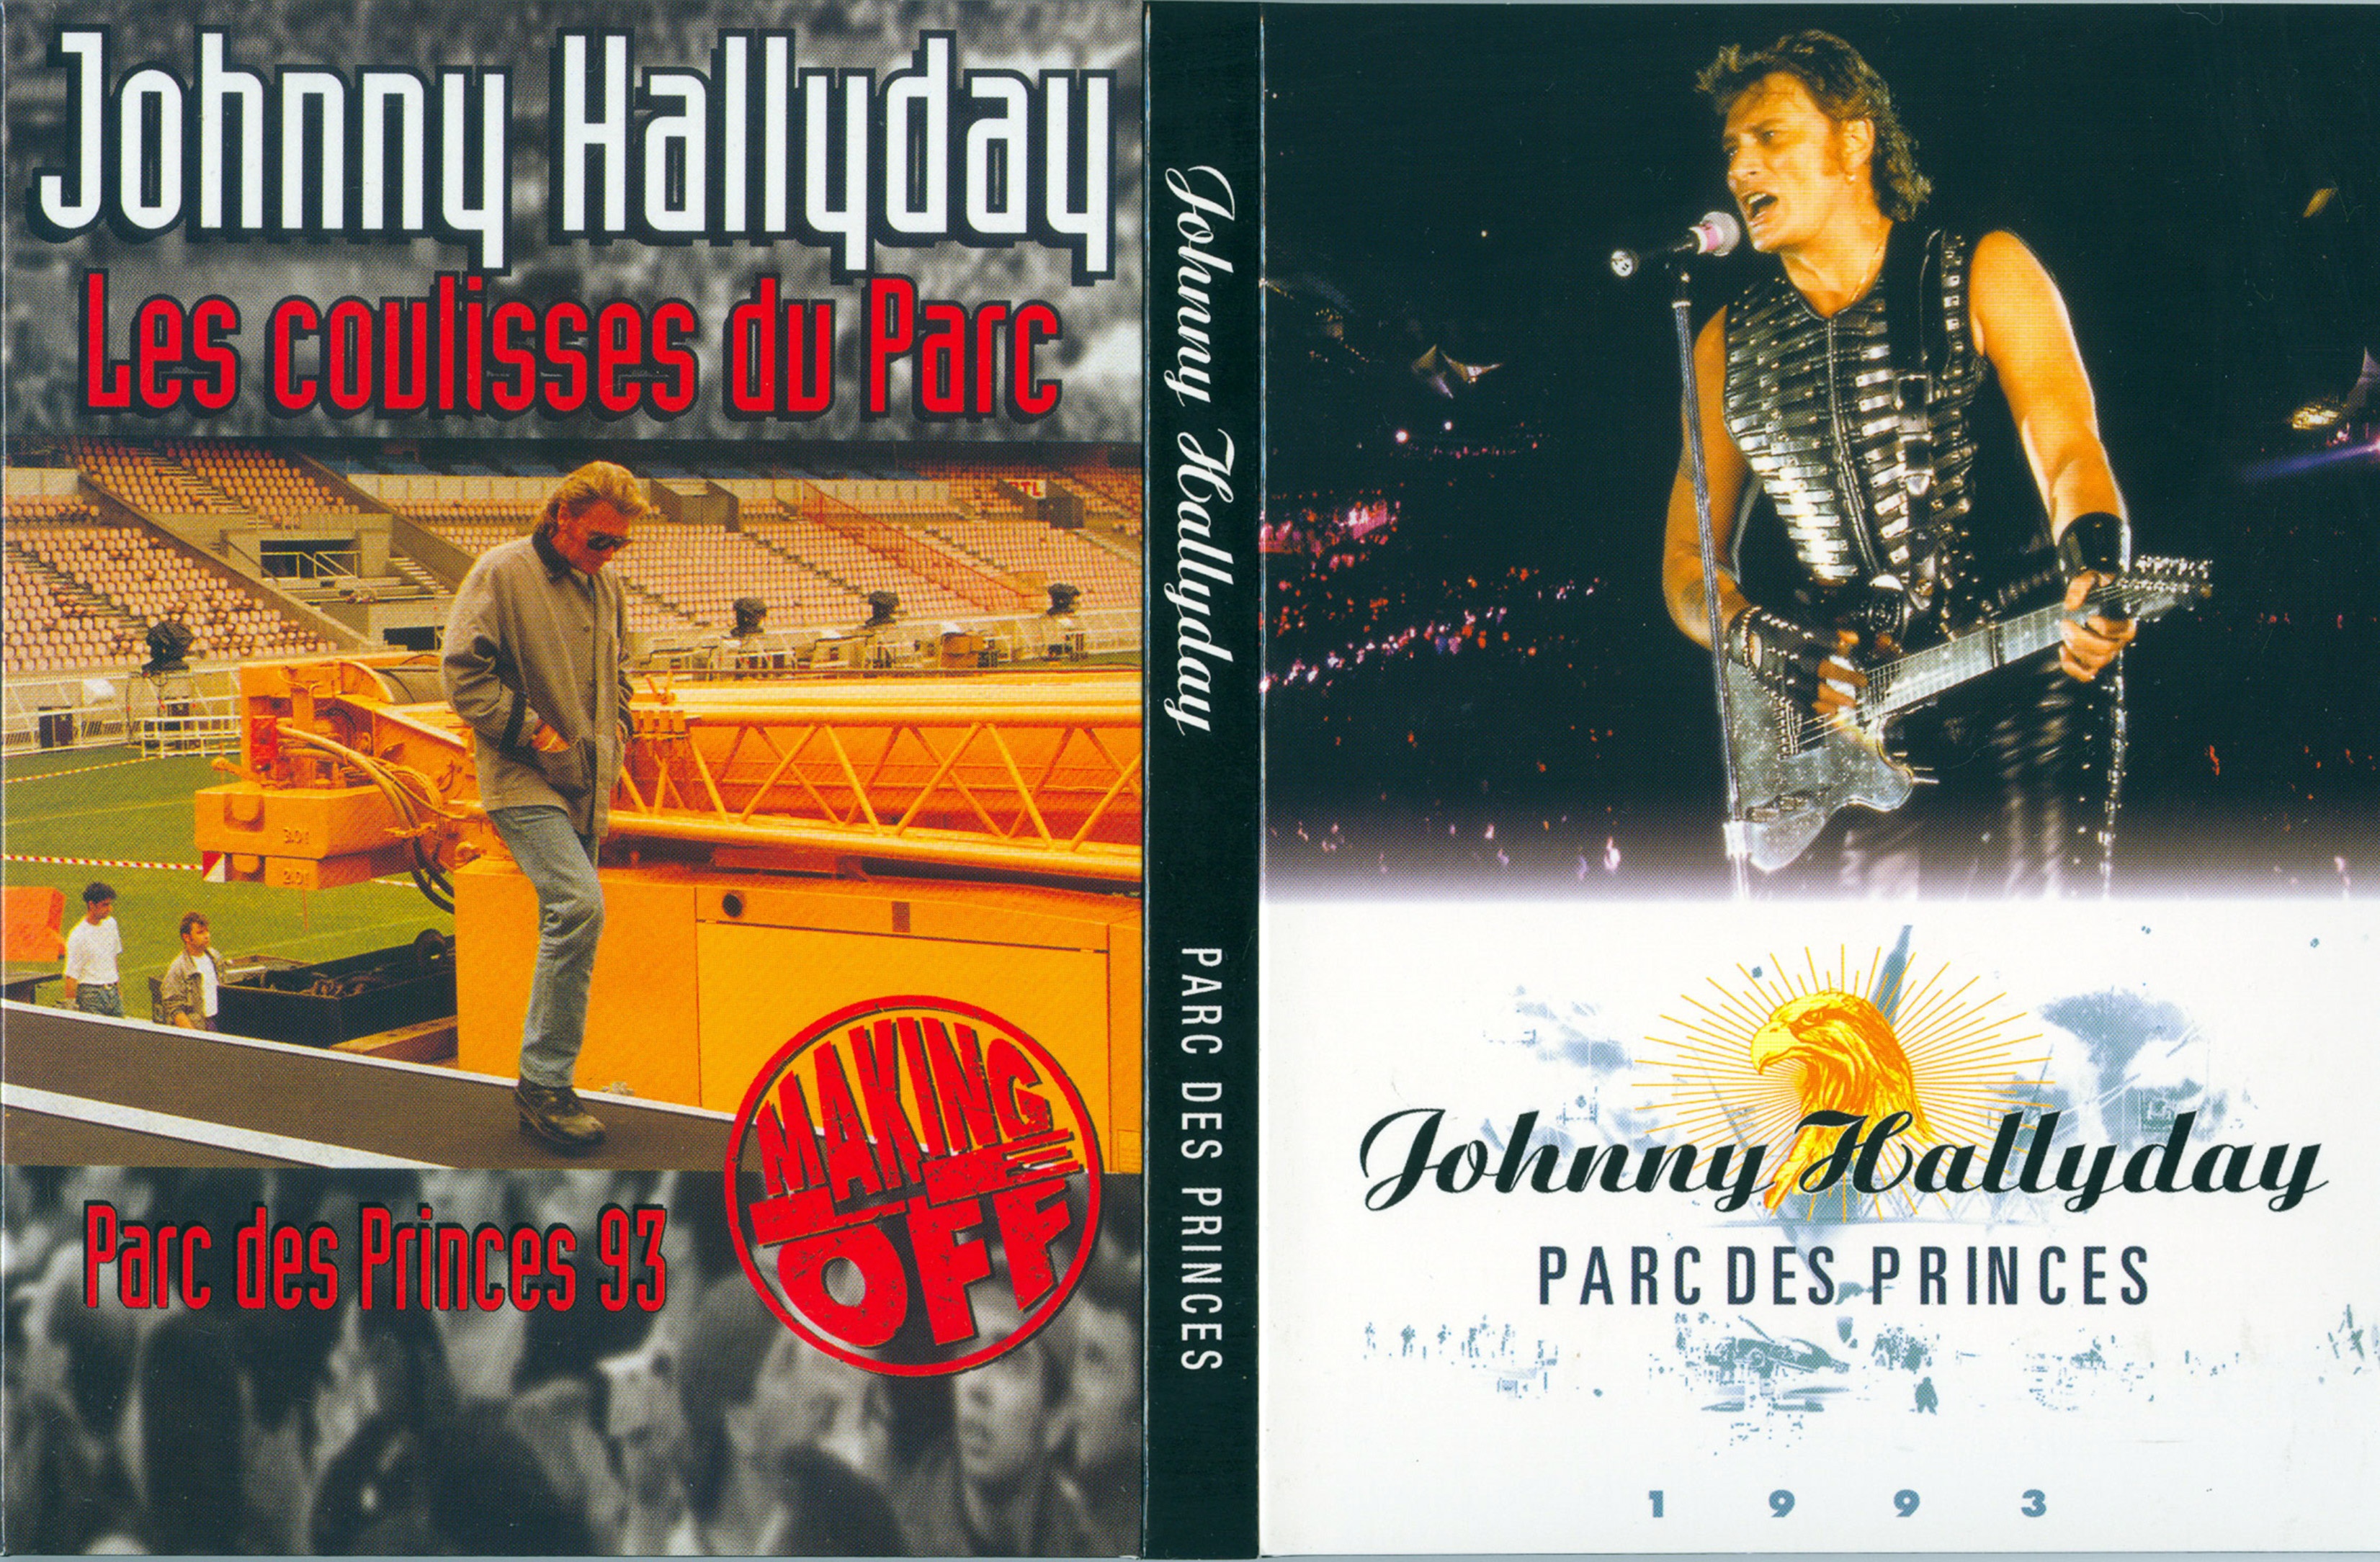 Jaquette DVD Johnny Hallyday parc des princes 1993